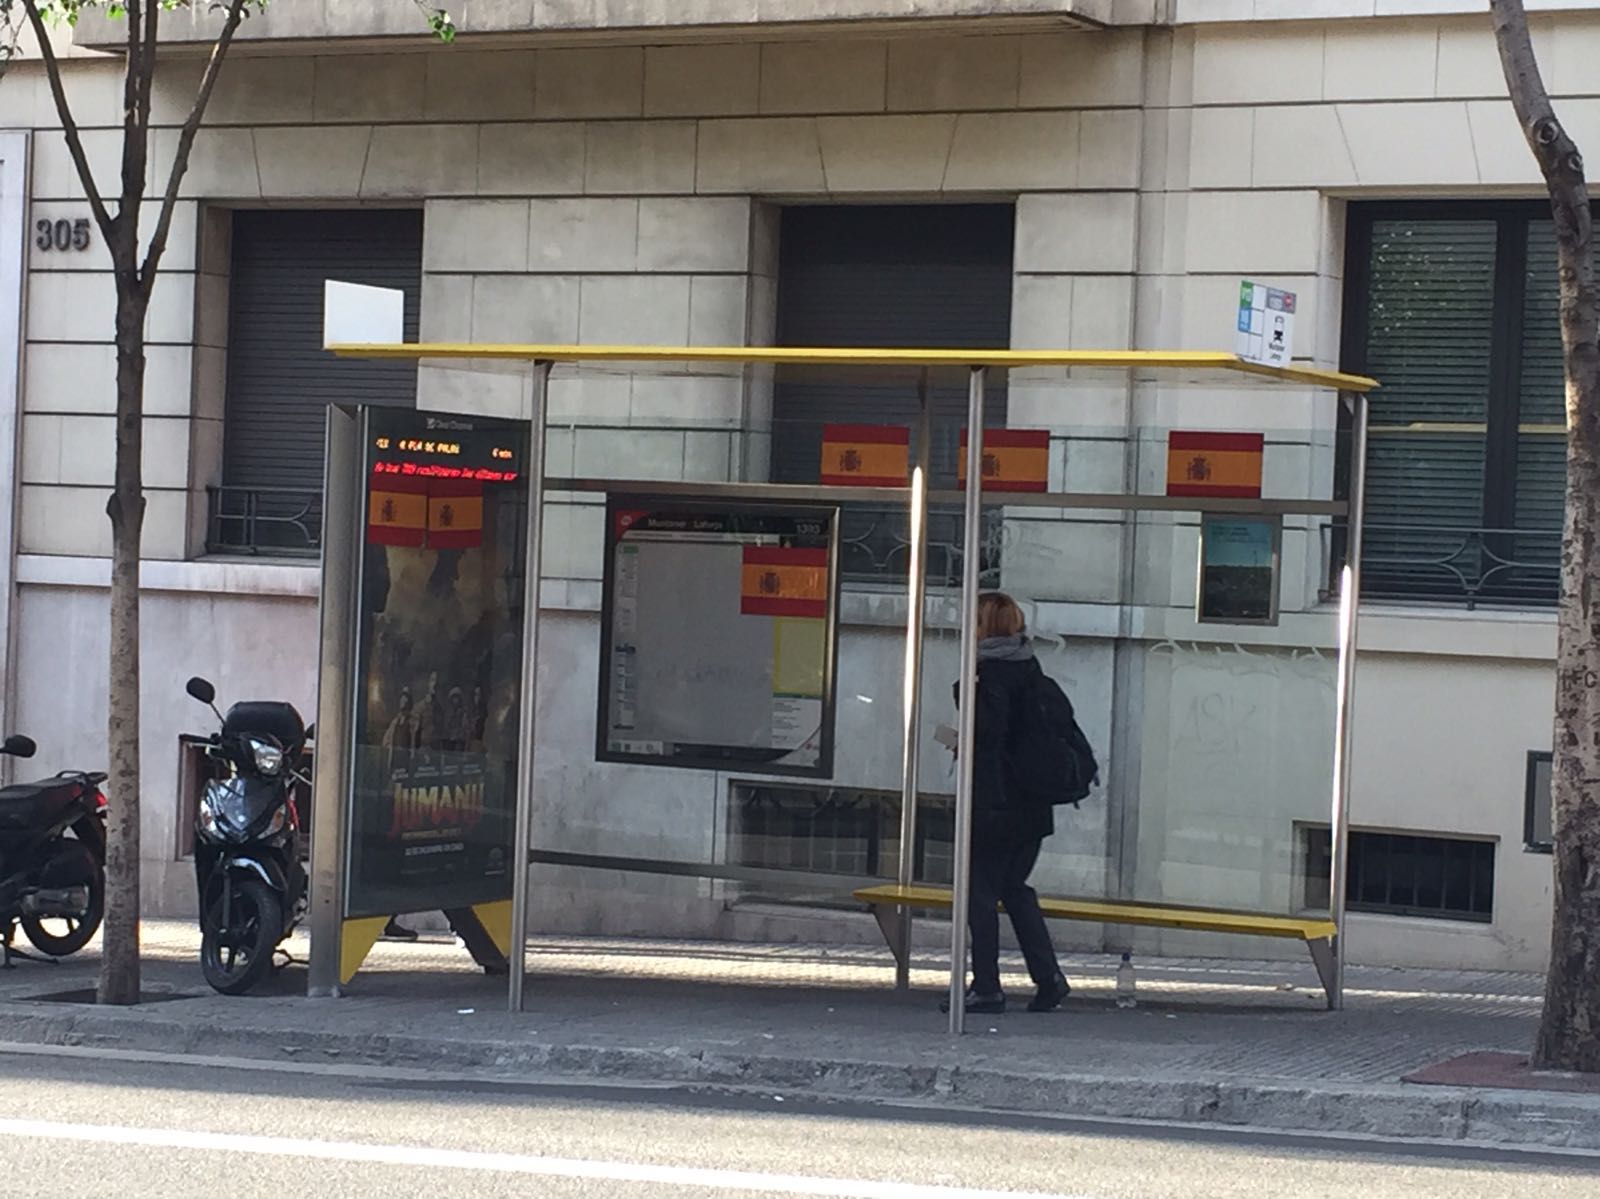 Demanen a l'Ajuntament de Barcelona que netegi els carrers de pintades polítiques